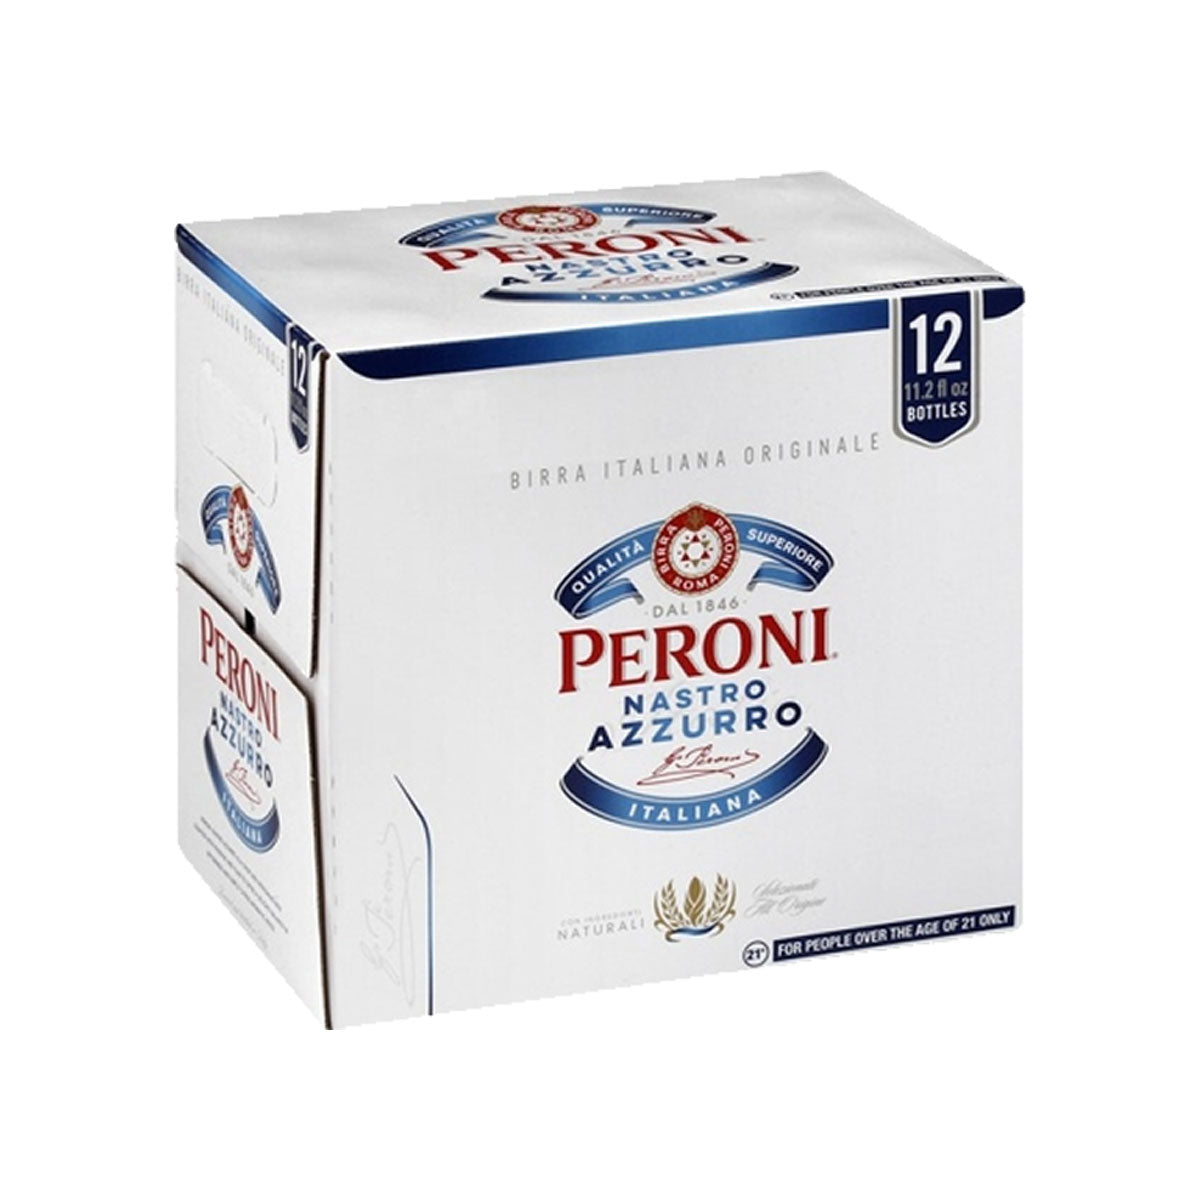 Peroni 12pk Bottles – Sunfish Cellars